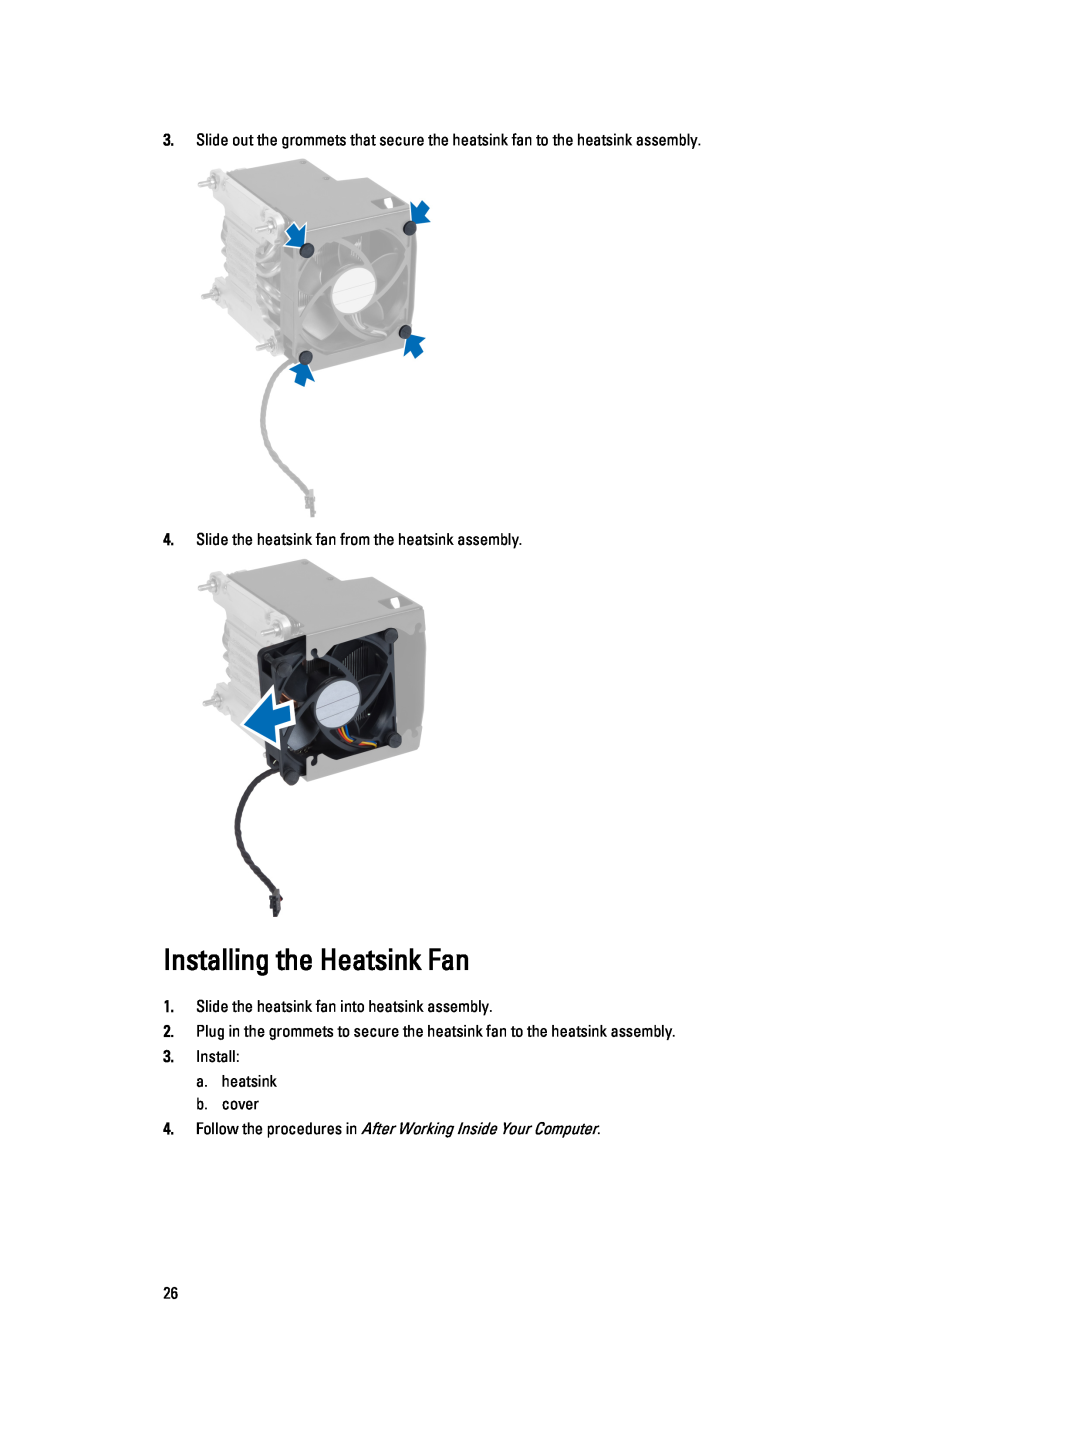 Dell T5610 Installing the Heatsink Fan, Slide the heatsink fan from the heatsink assembly, Install a. heatsink b. cover 